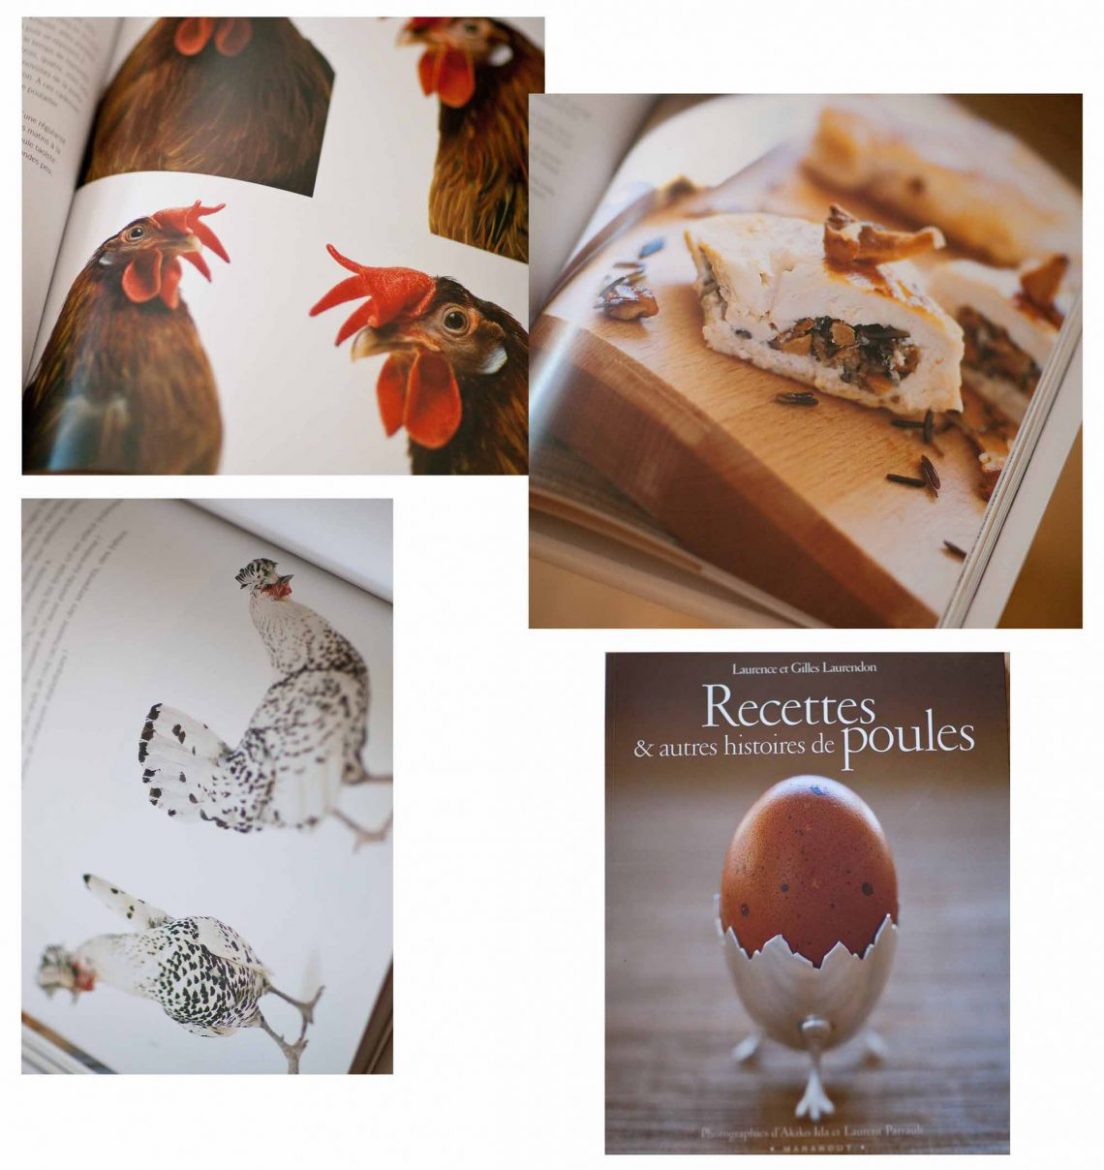 Recettes et autres histoires de poules, sélection de livres de cuisine et gastronomie 2014